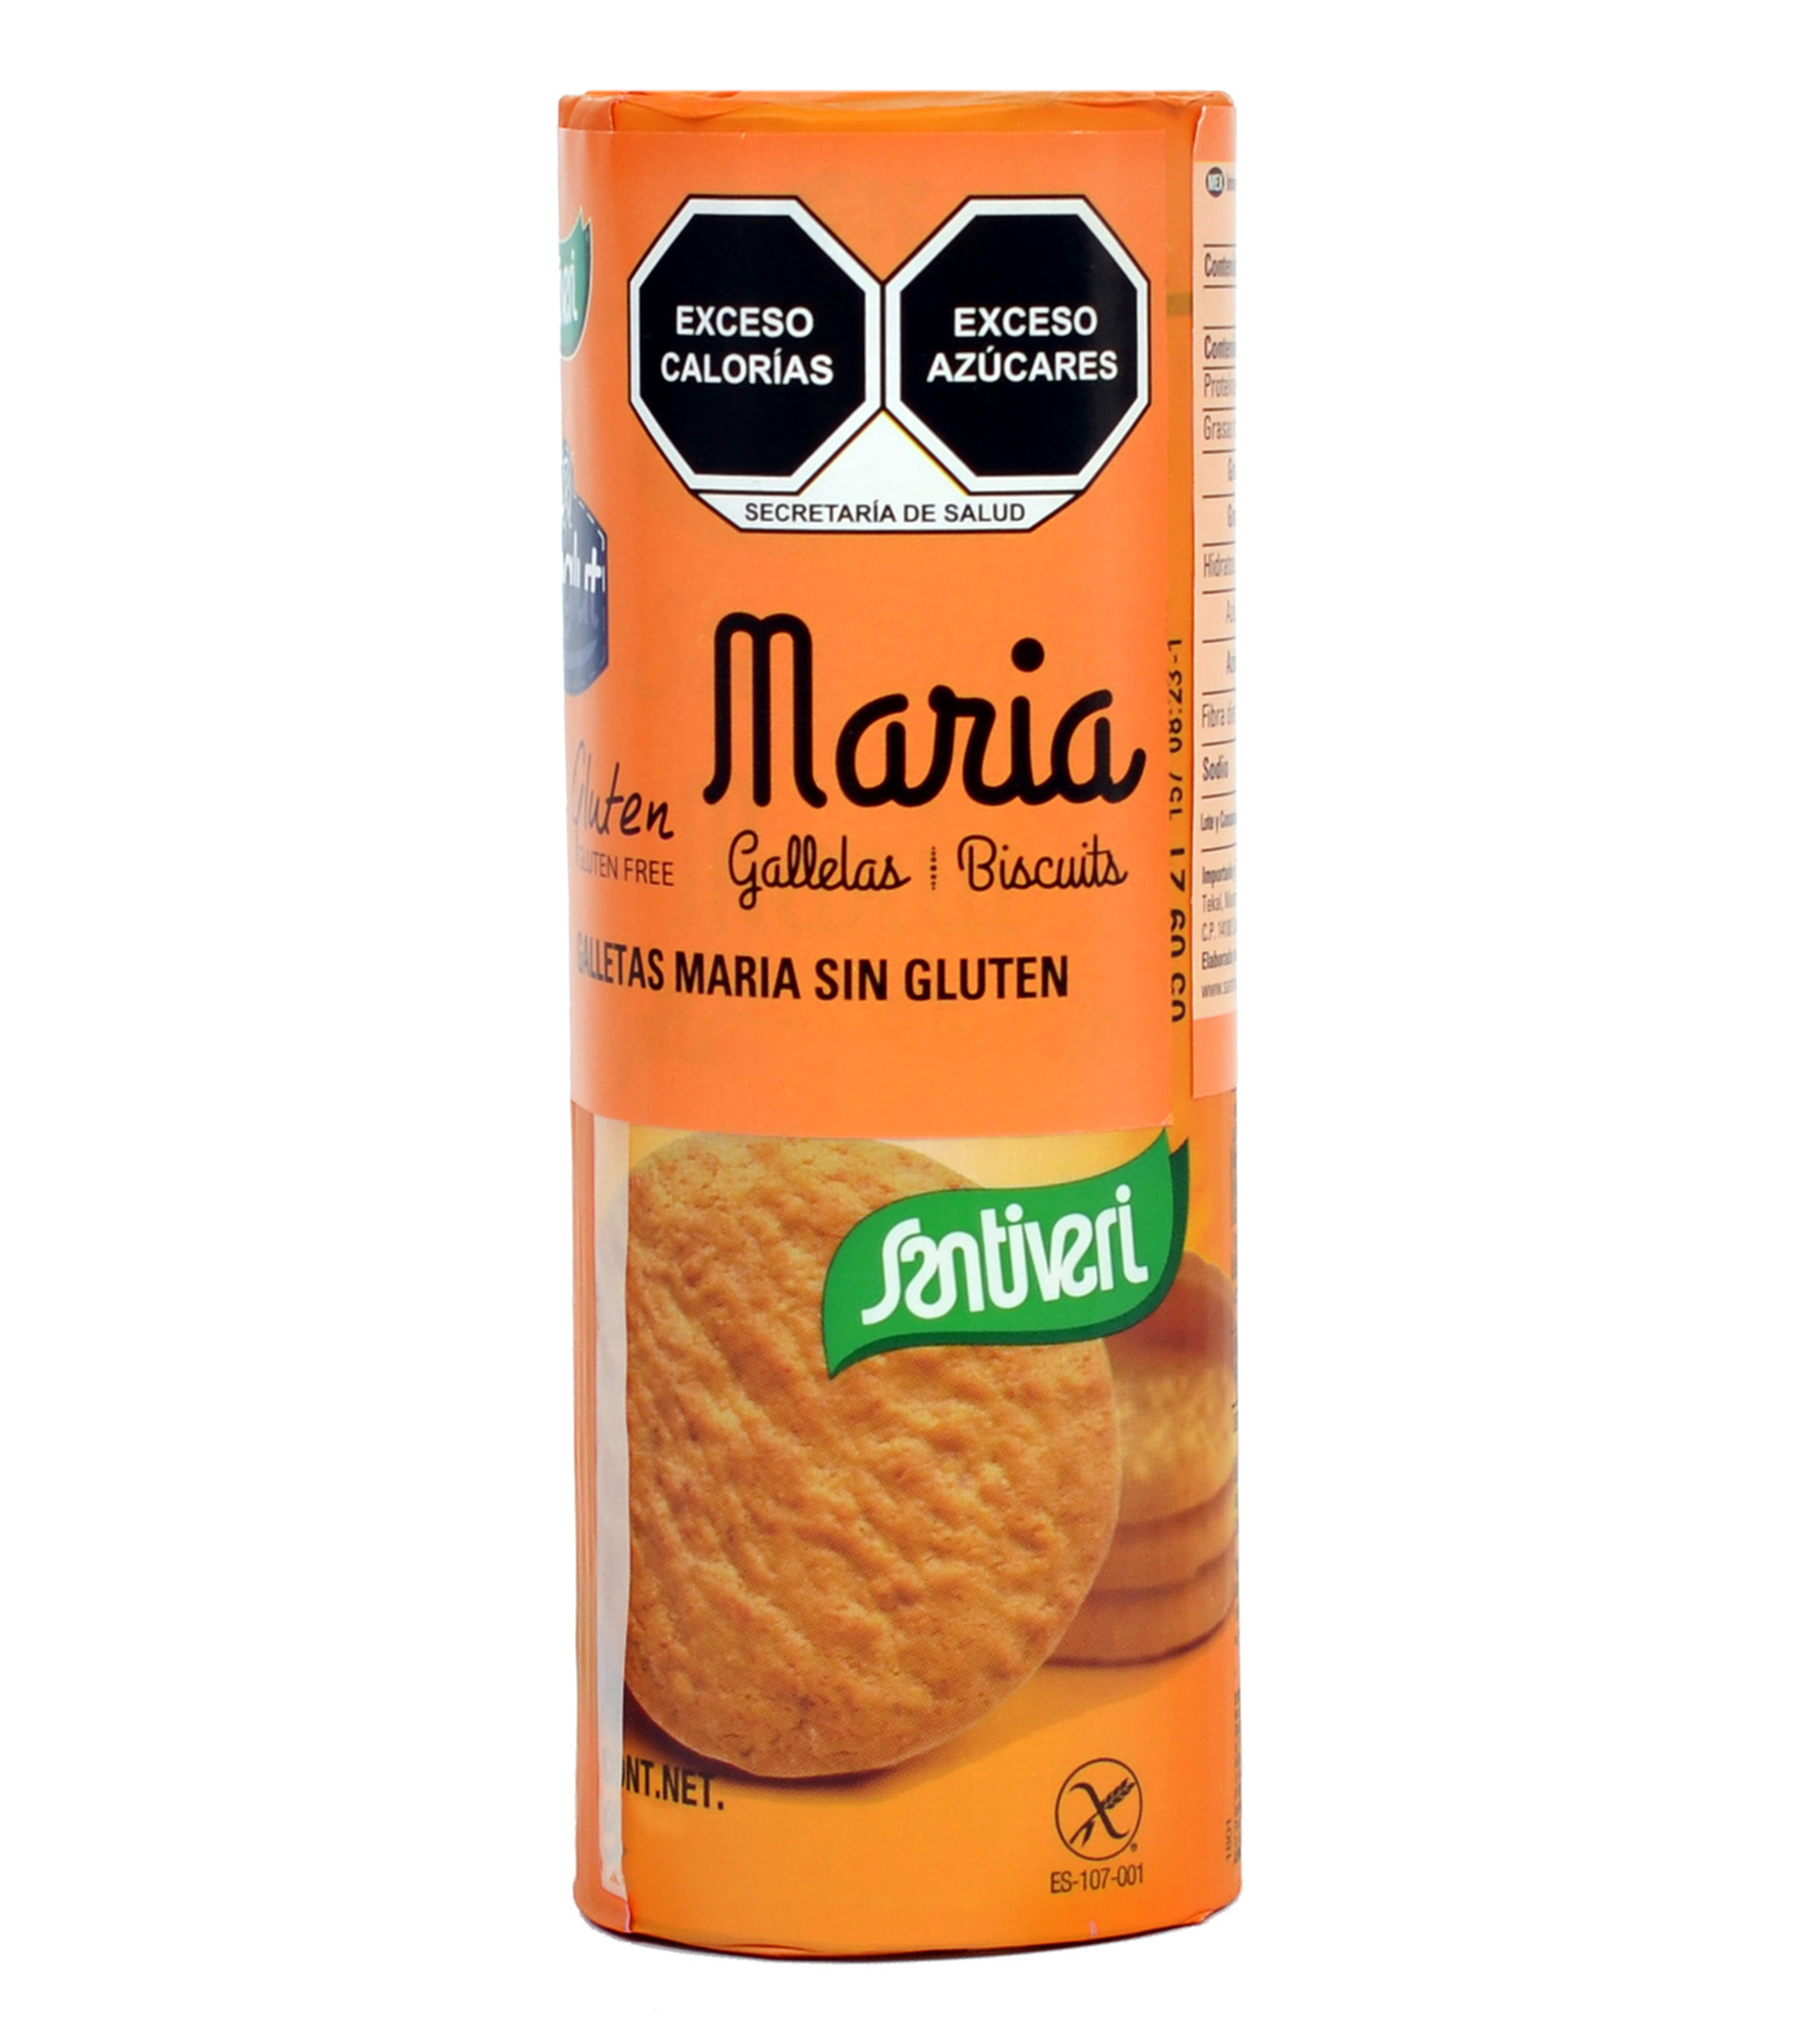 Galletas María Santiveri sin gluten 185 g